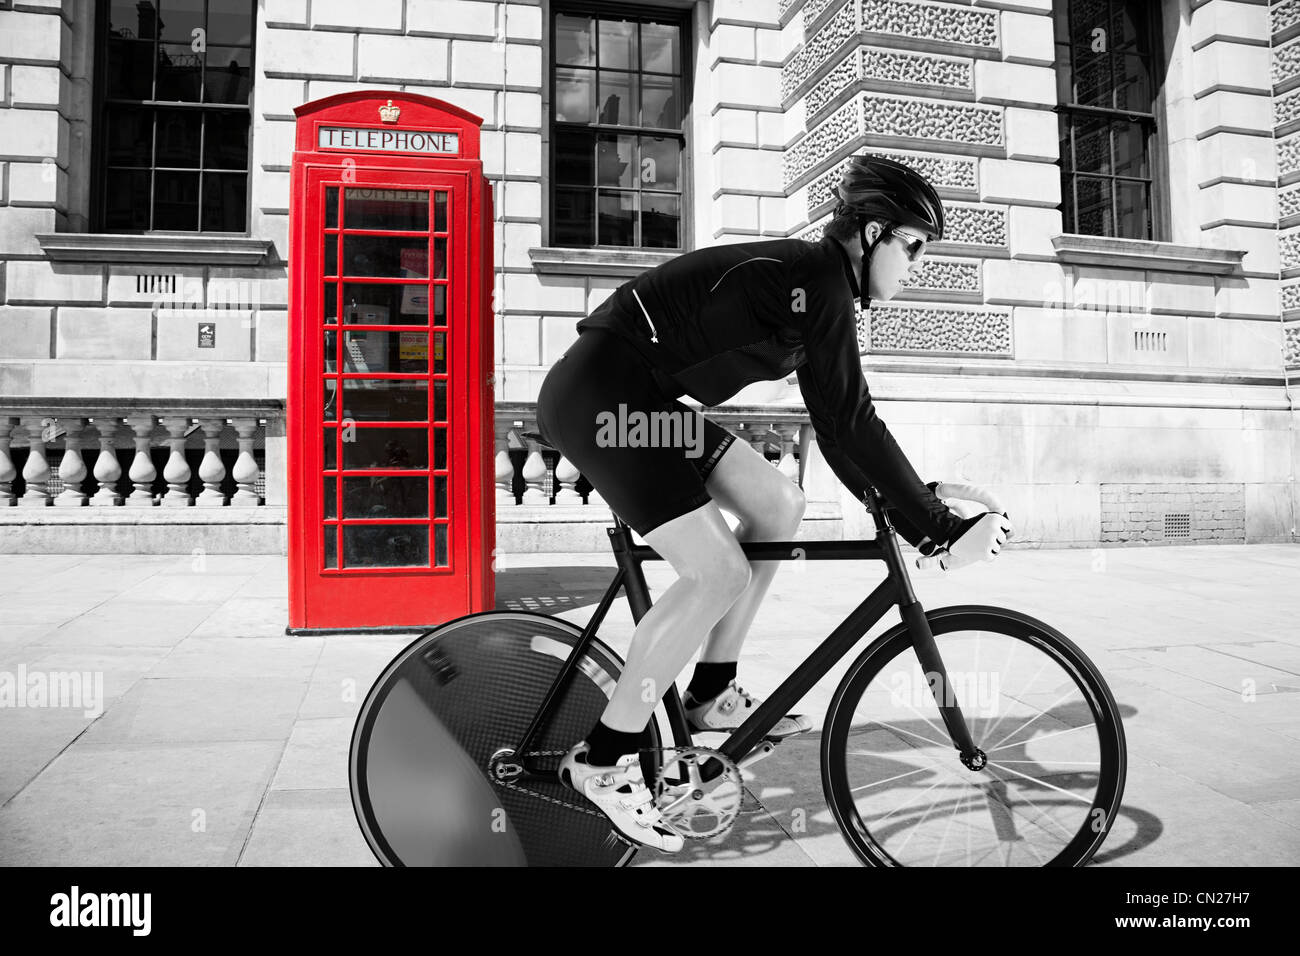 Vorbei an roten Telefonzelle Radfahren Radfahrer Stockfoto